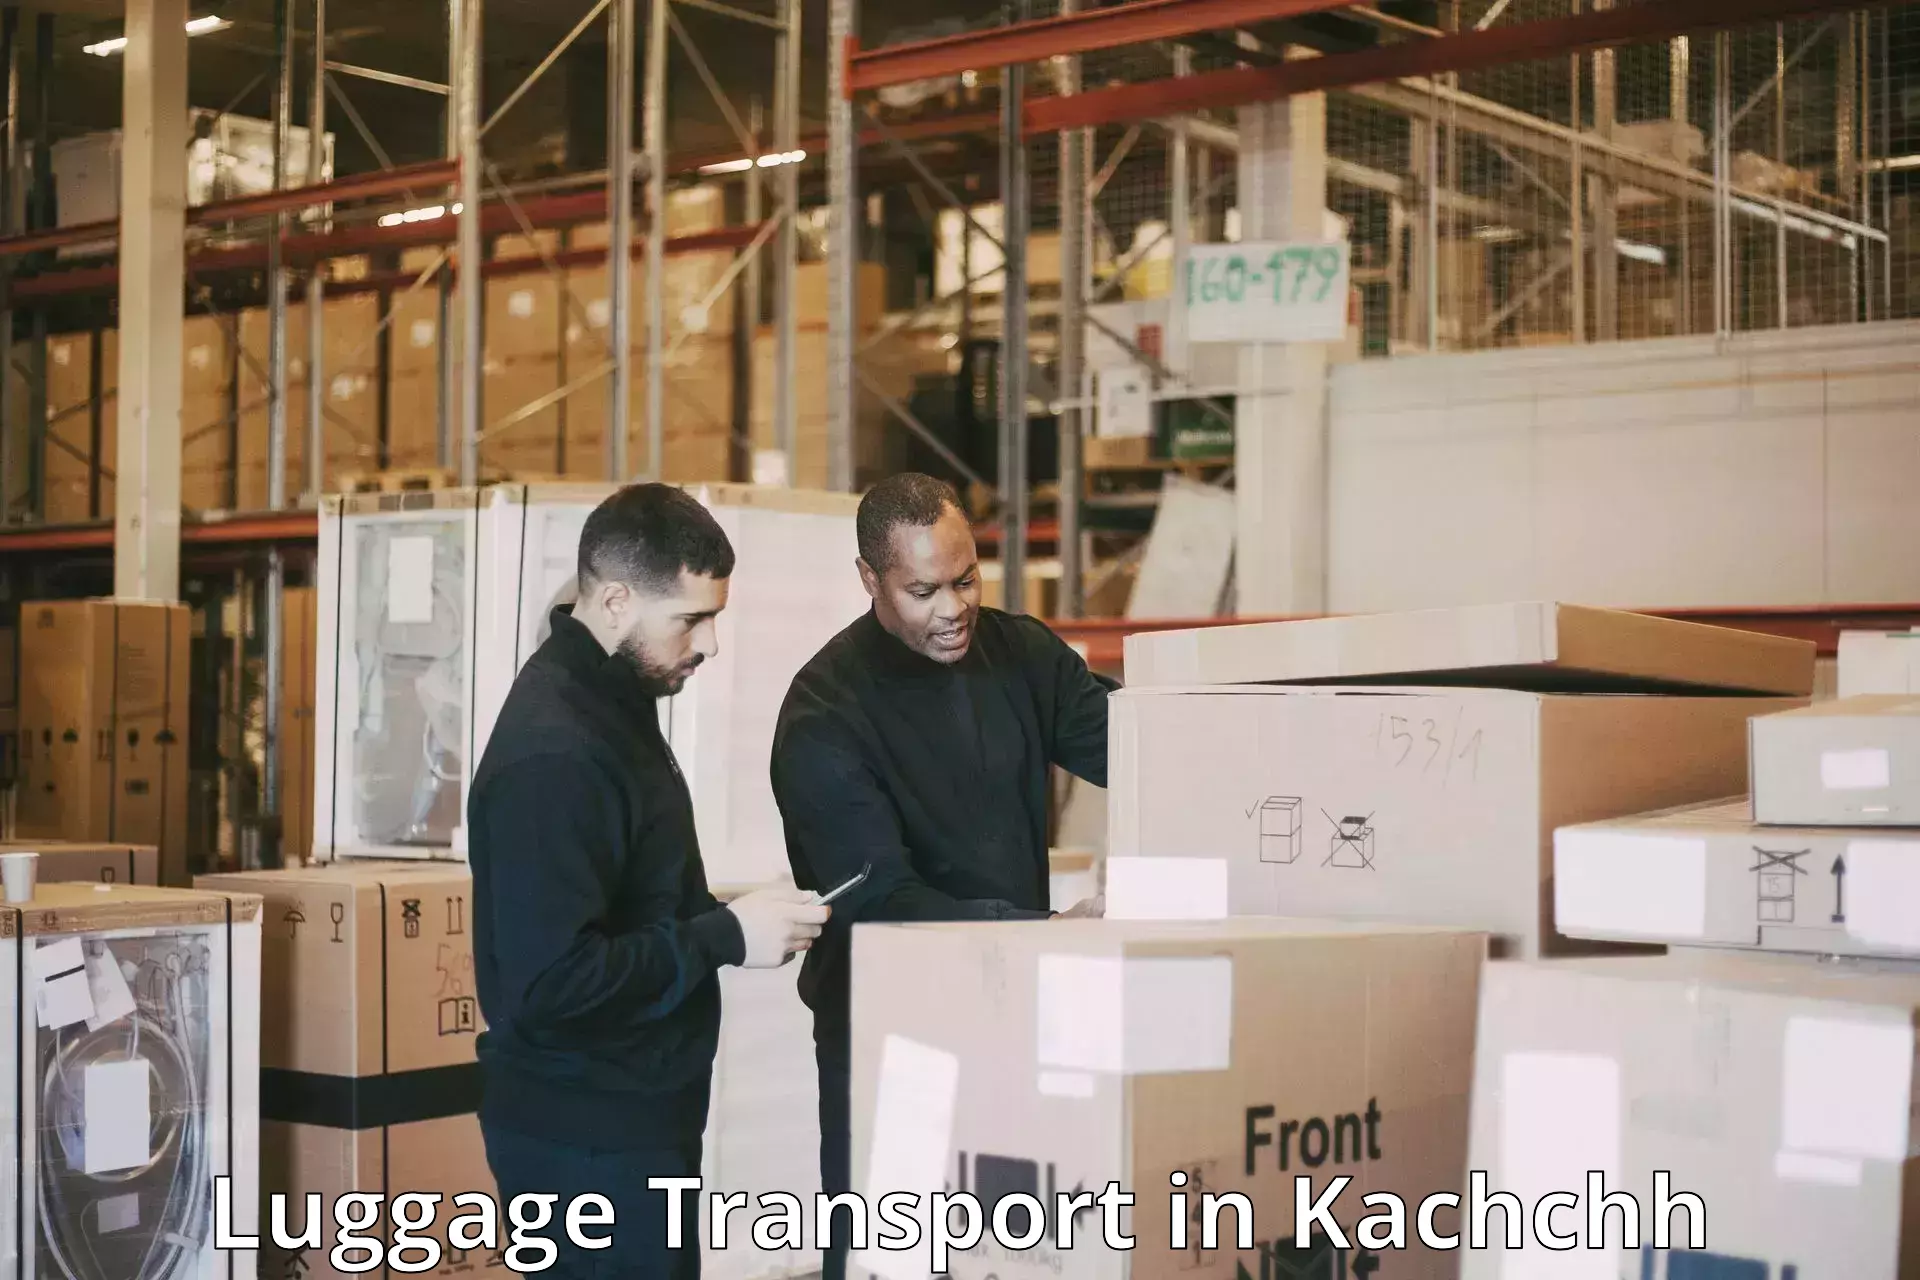 Luggage transport deals in Kachchh